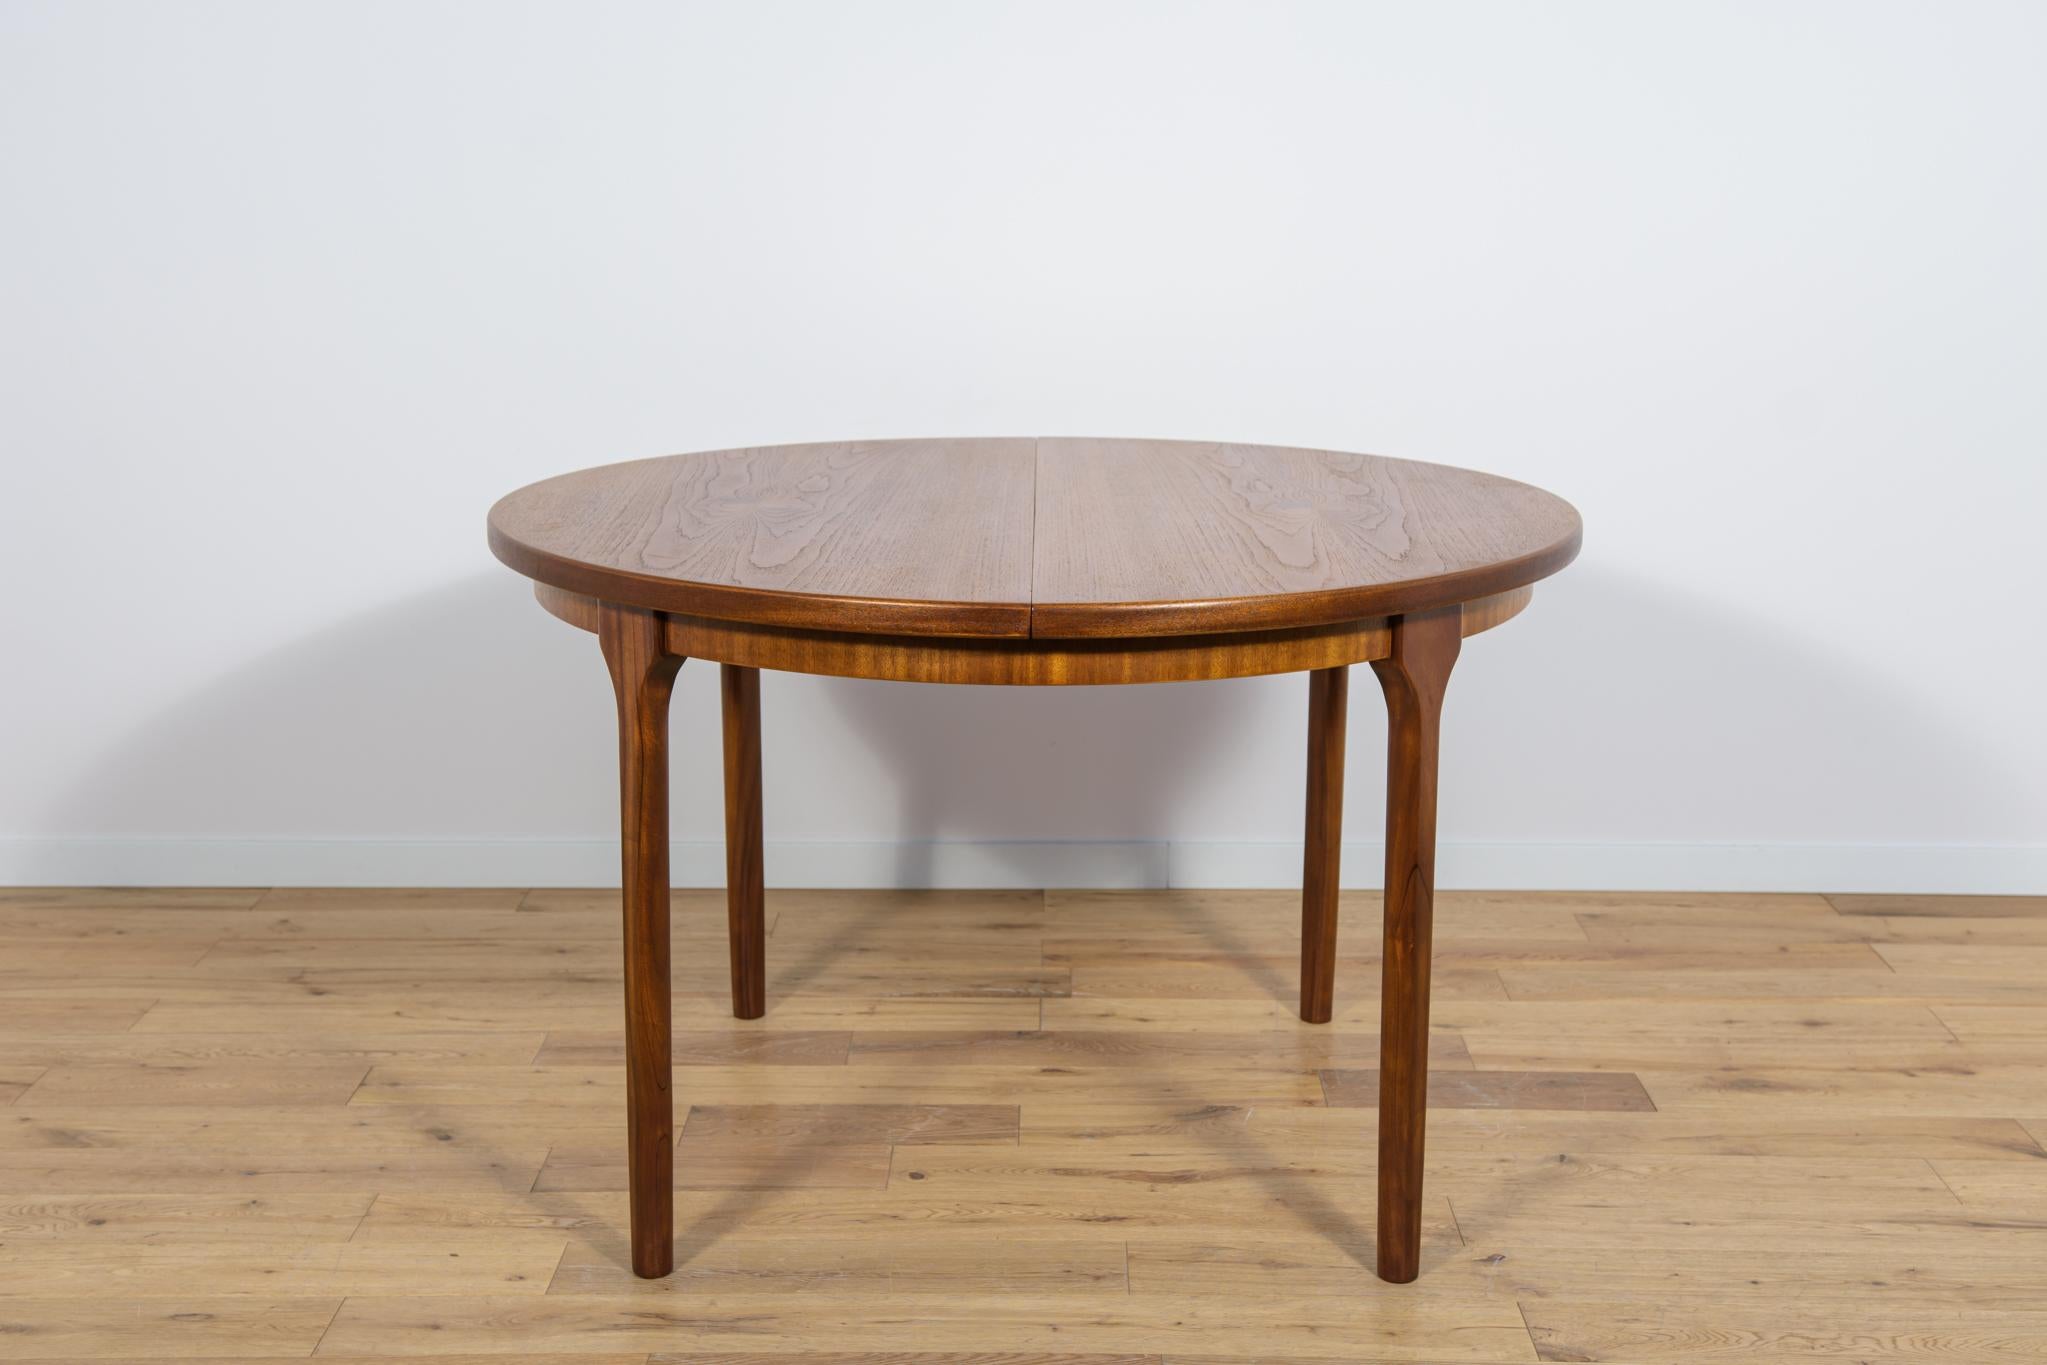 Dieser runde, ausziehbare Esstisch wurde in den 1960er Jahren von McIntosh hergestellt. Der Tisch hat profilierte Beine, die ihm einen einzigartigen Charakter und Eleganz verleihen. Teakholz-Elemente wurden von der alten Oberfläche gereinigt und mit